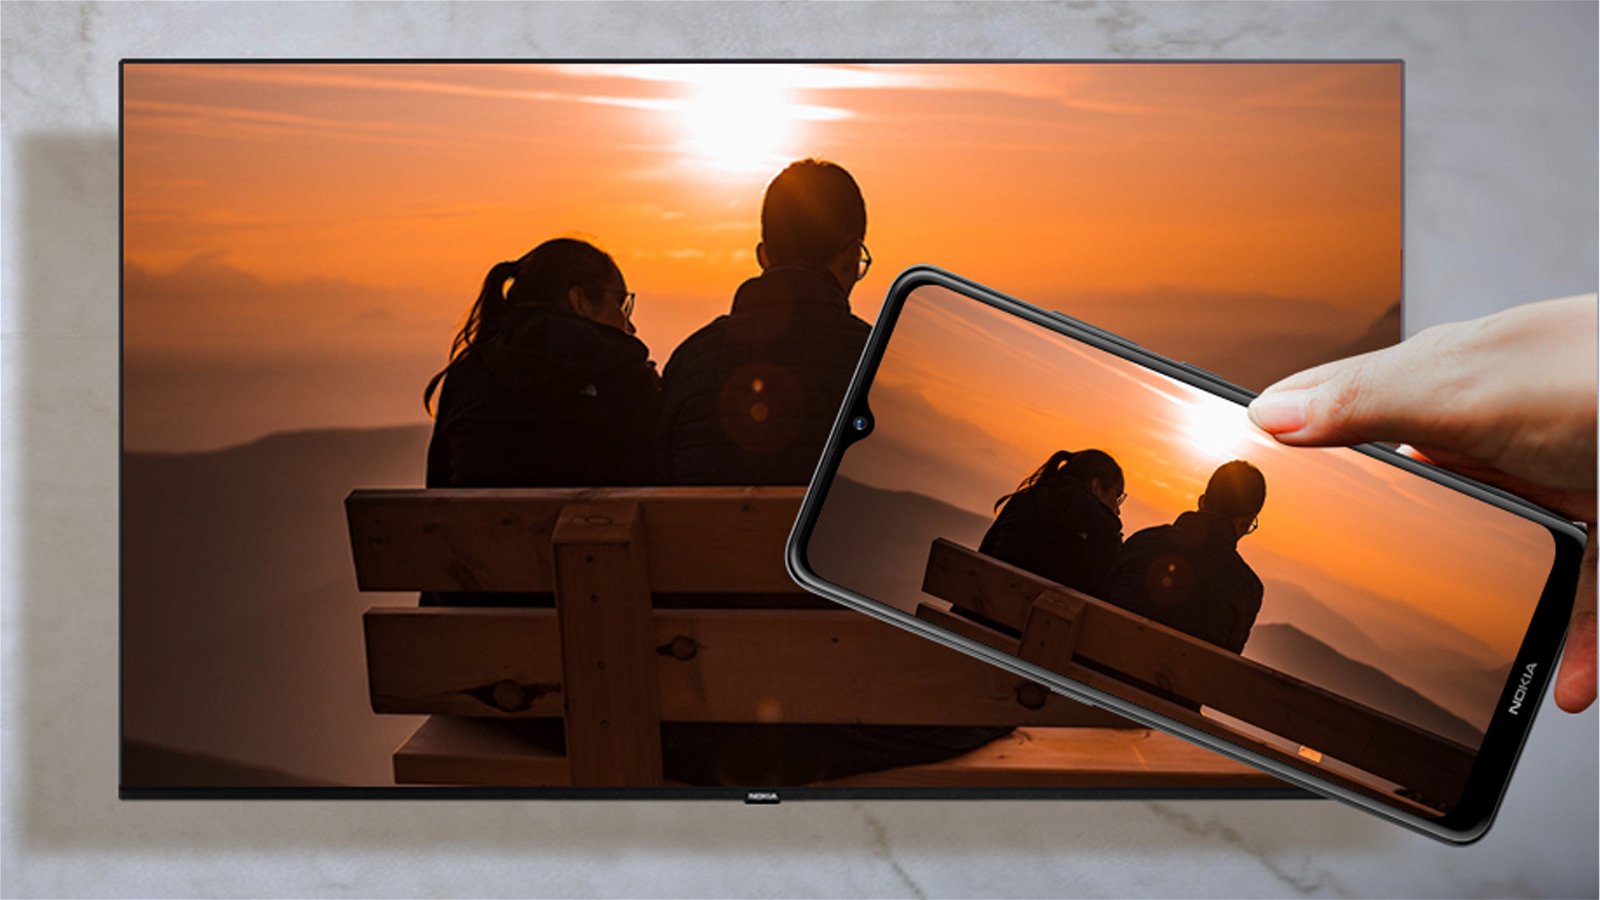 Immagine di Super sconto su questa smart TV 50" con Amazon Fire TV integrato!